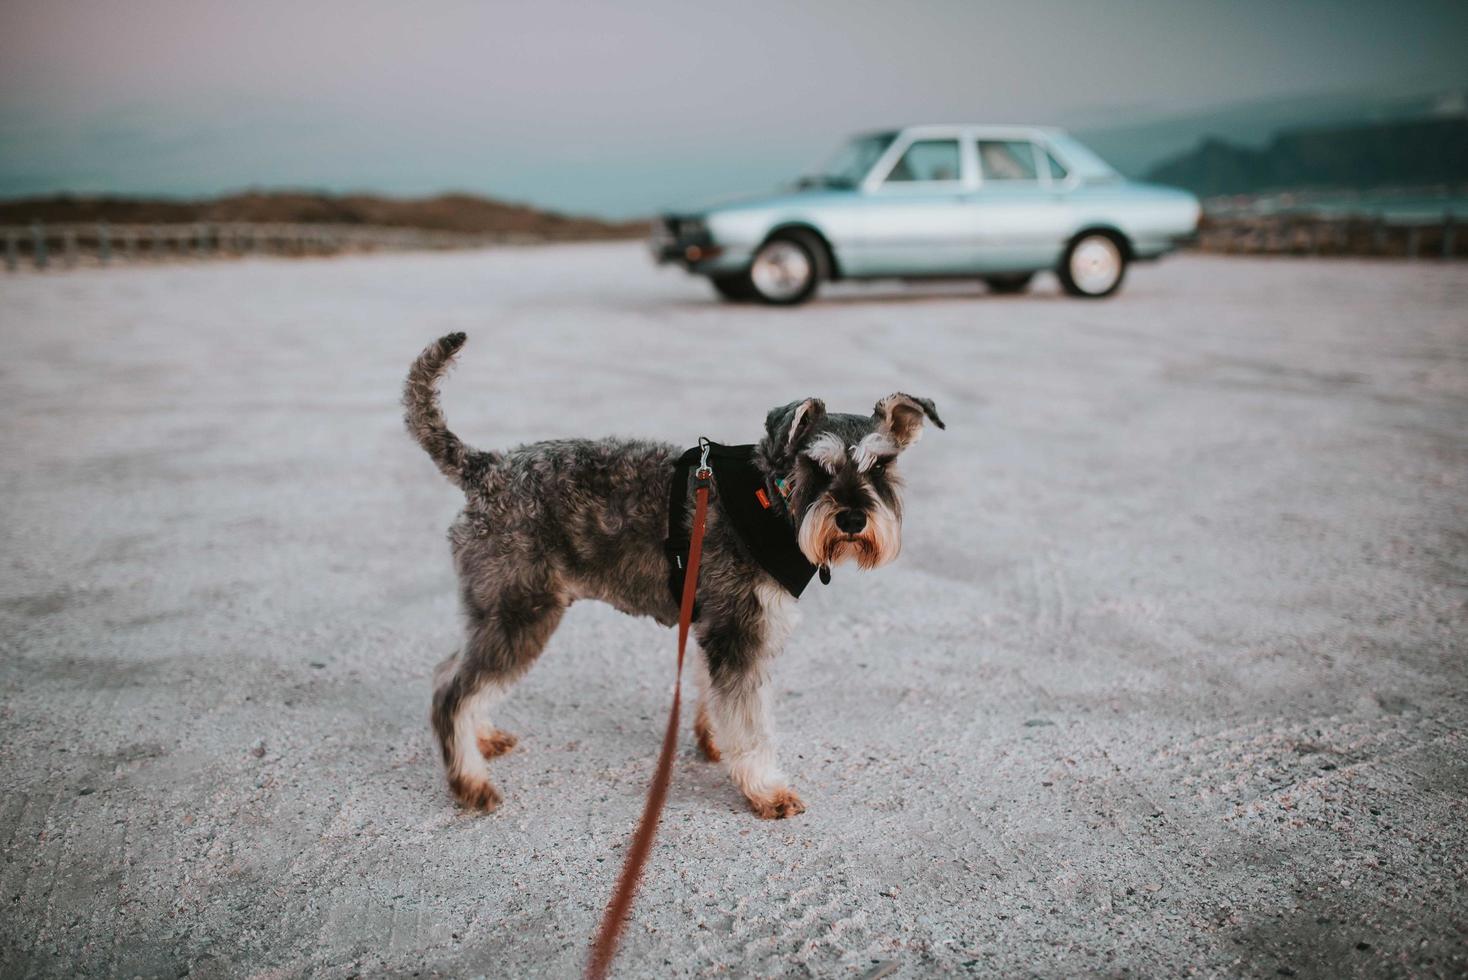 cidade do cabo, áfrica do sul, 2020 - cachorro terrier na frente de carro clássico foto